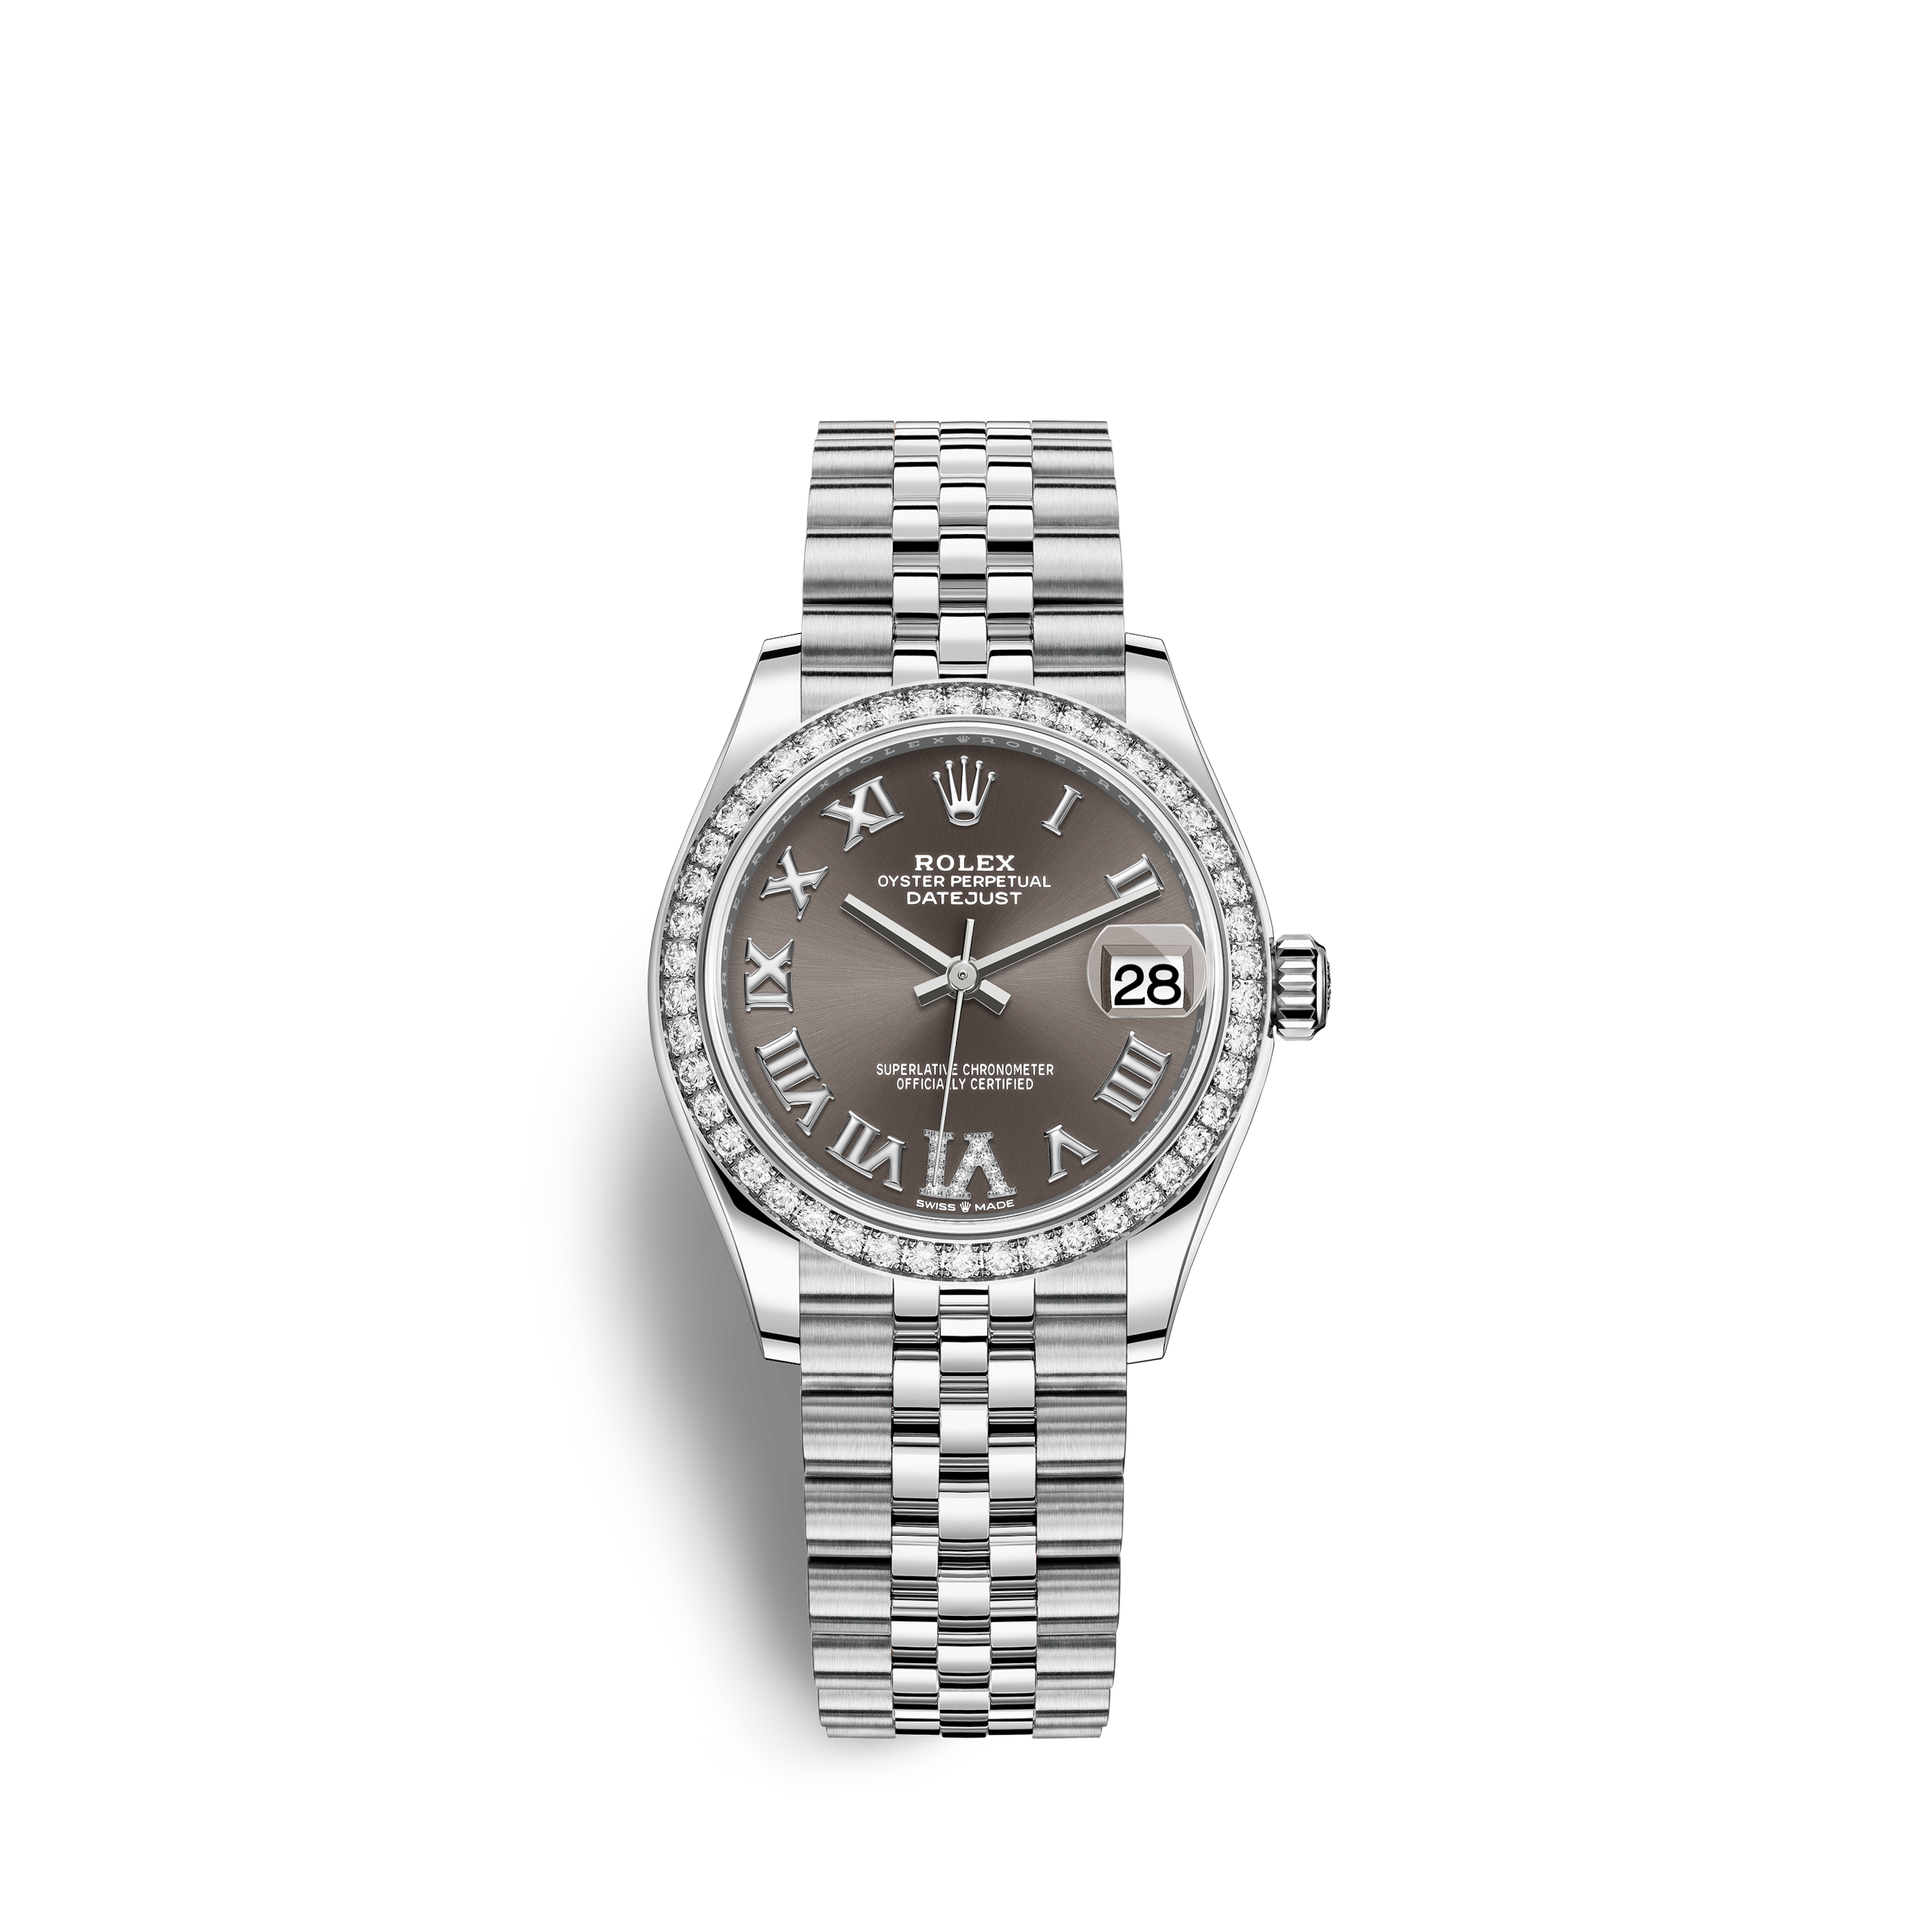 Rolex 2-Tone Datejust Steel & Gold Ladies Watch 69173